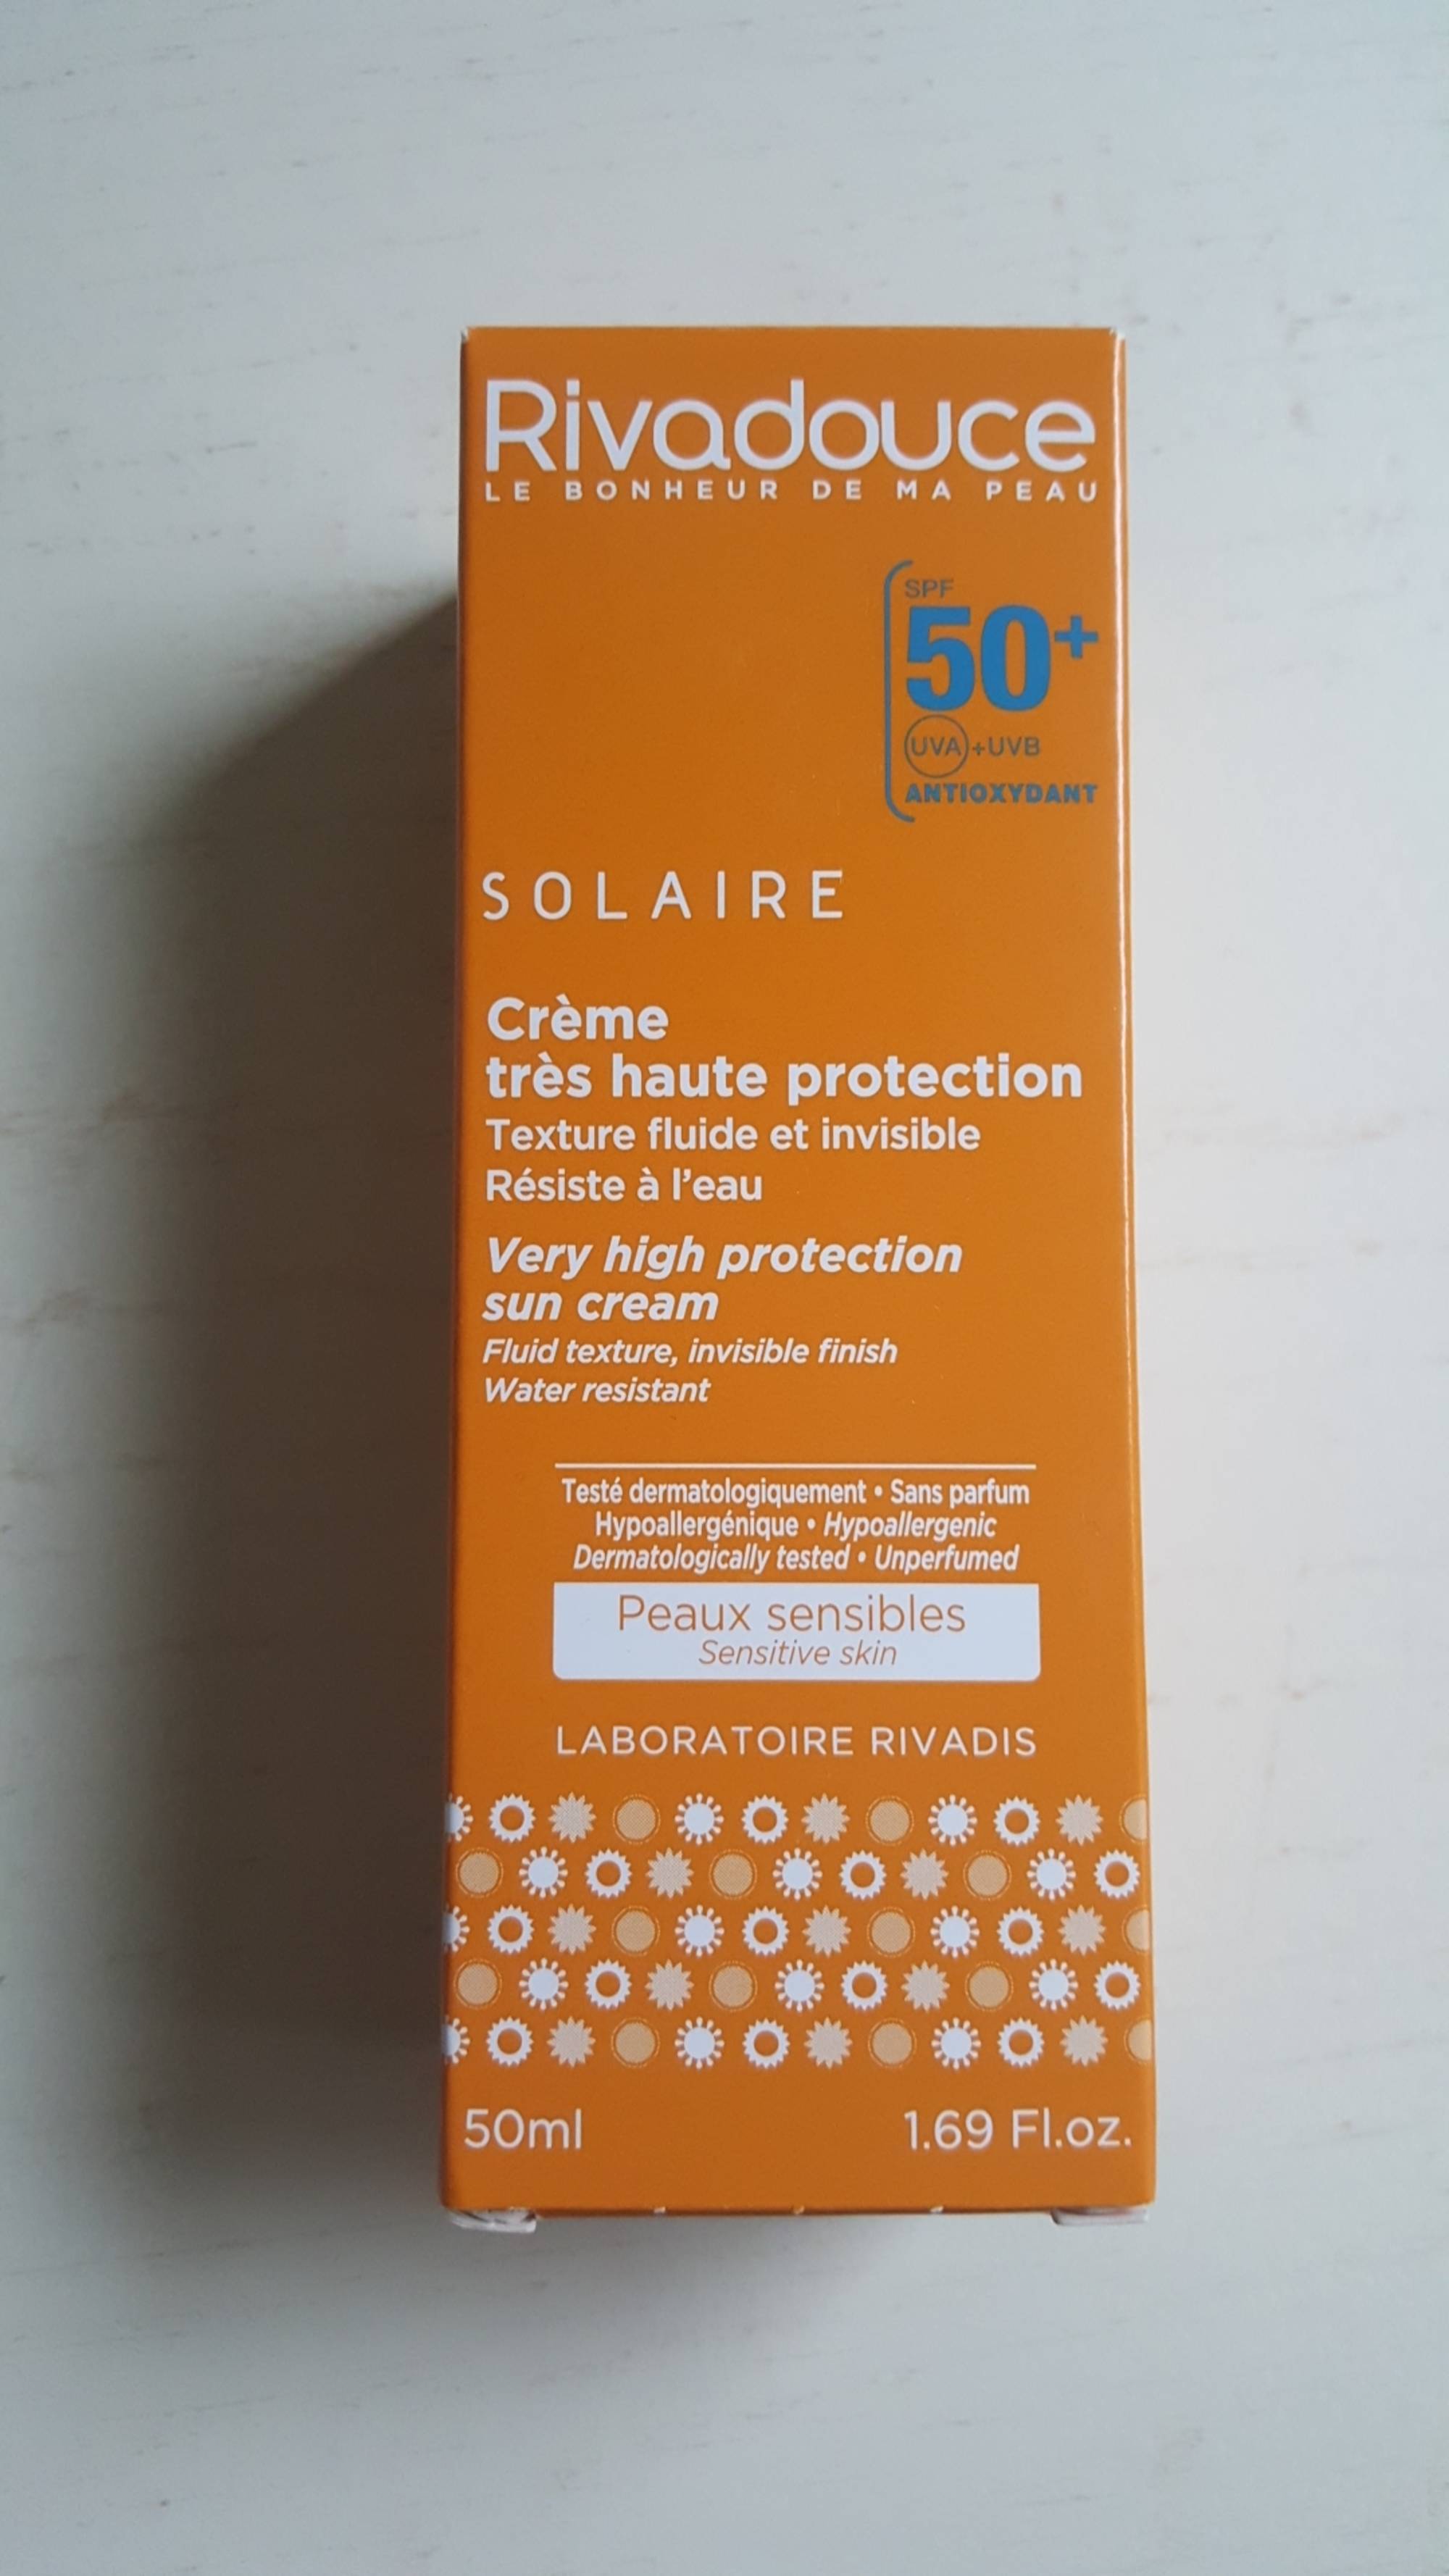 RIVADOUCE - Solaire - Crème très haute protection spf 50+